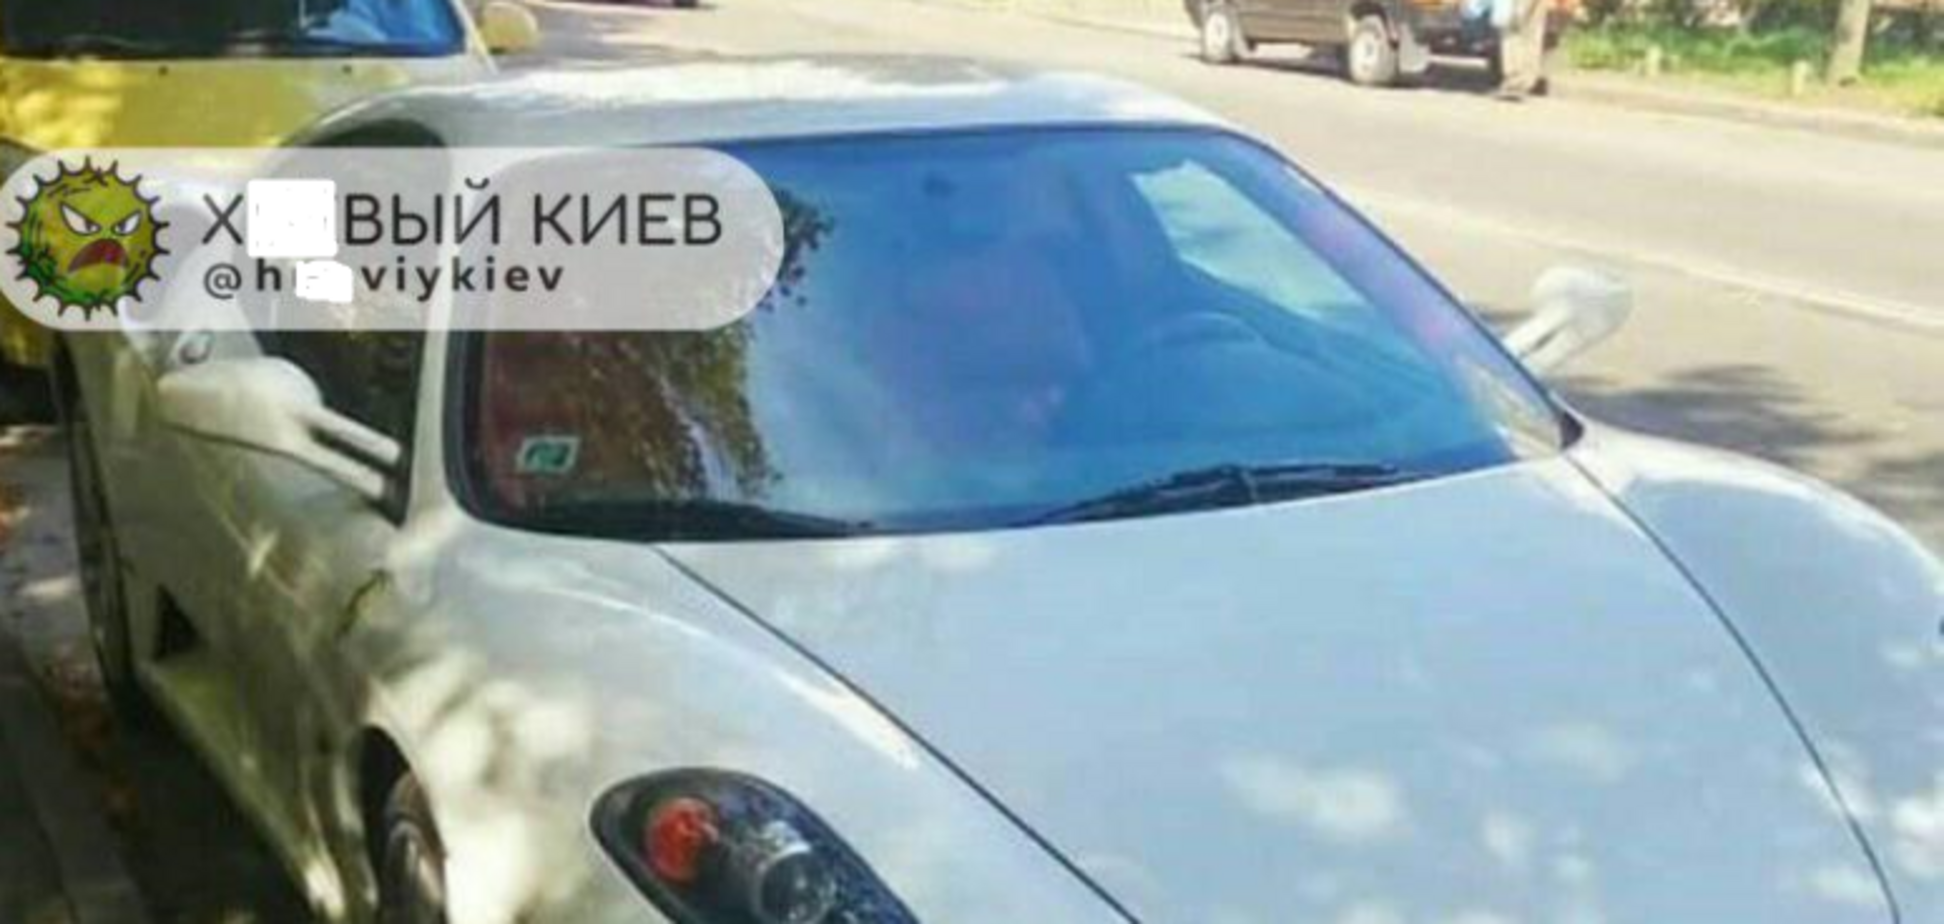 ''Тепер ти бачив усе'': в Києві засікли дорогий спорткар на єврономерах